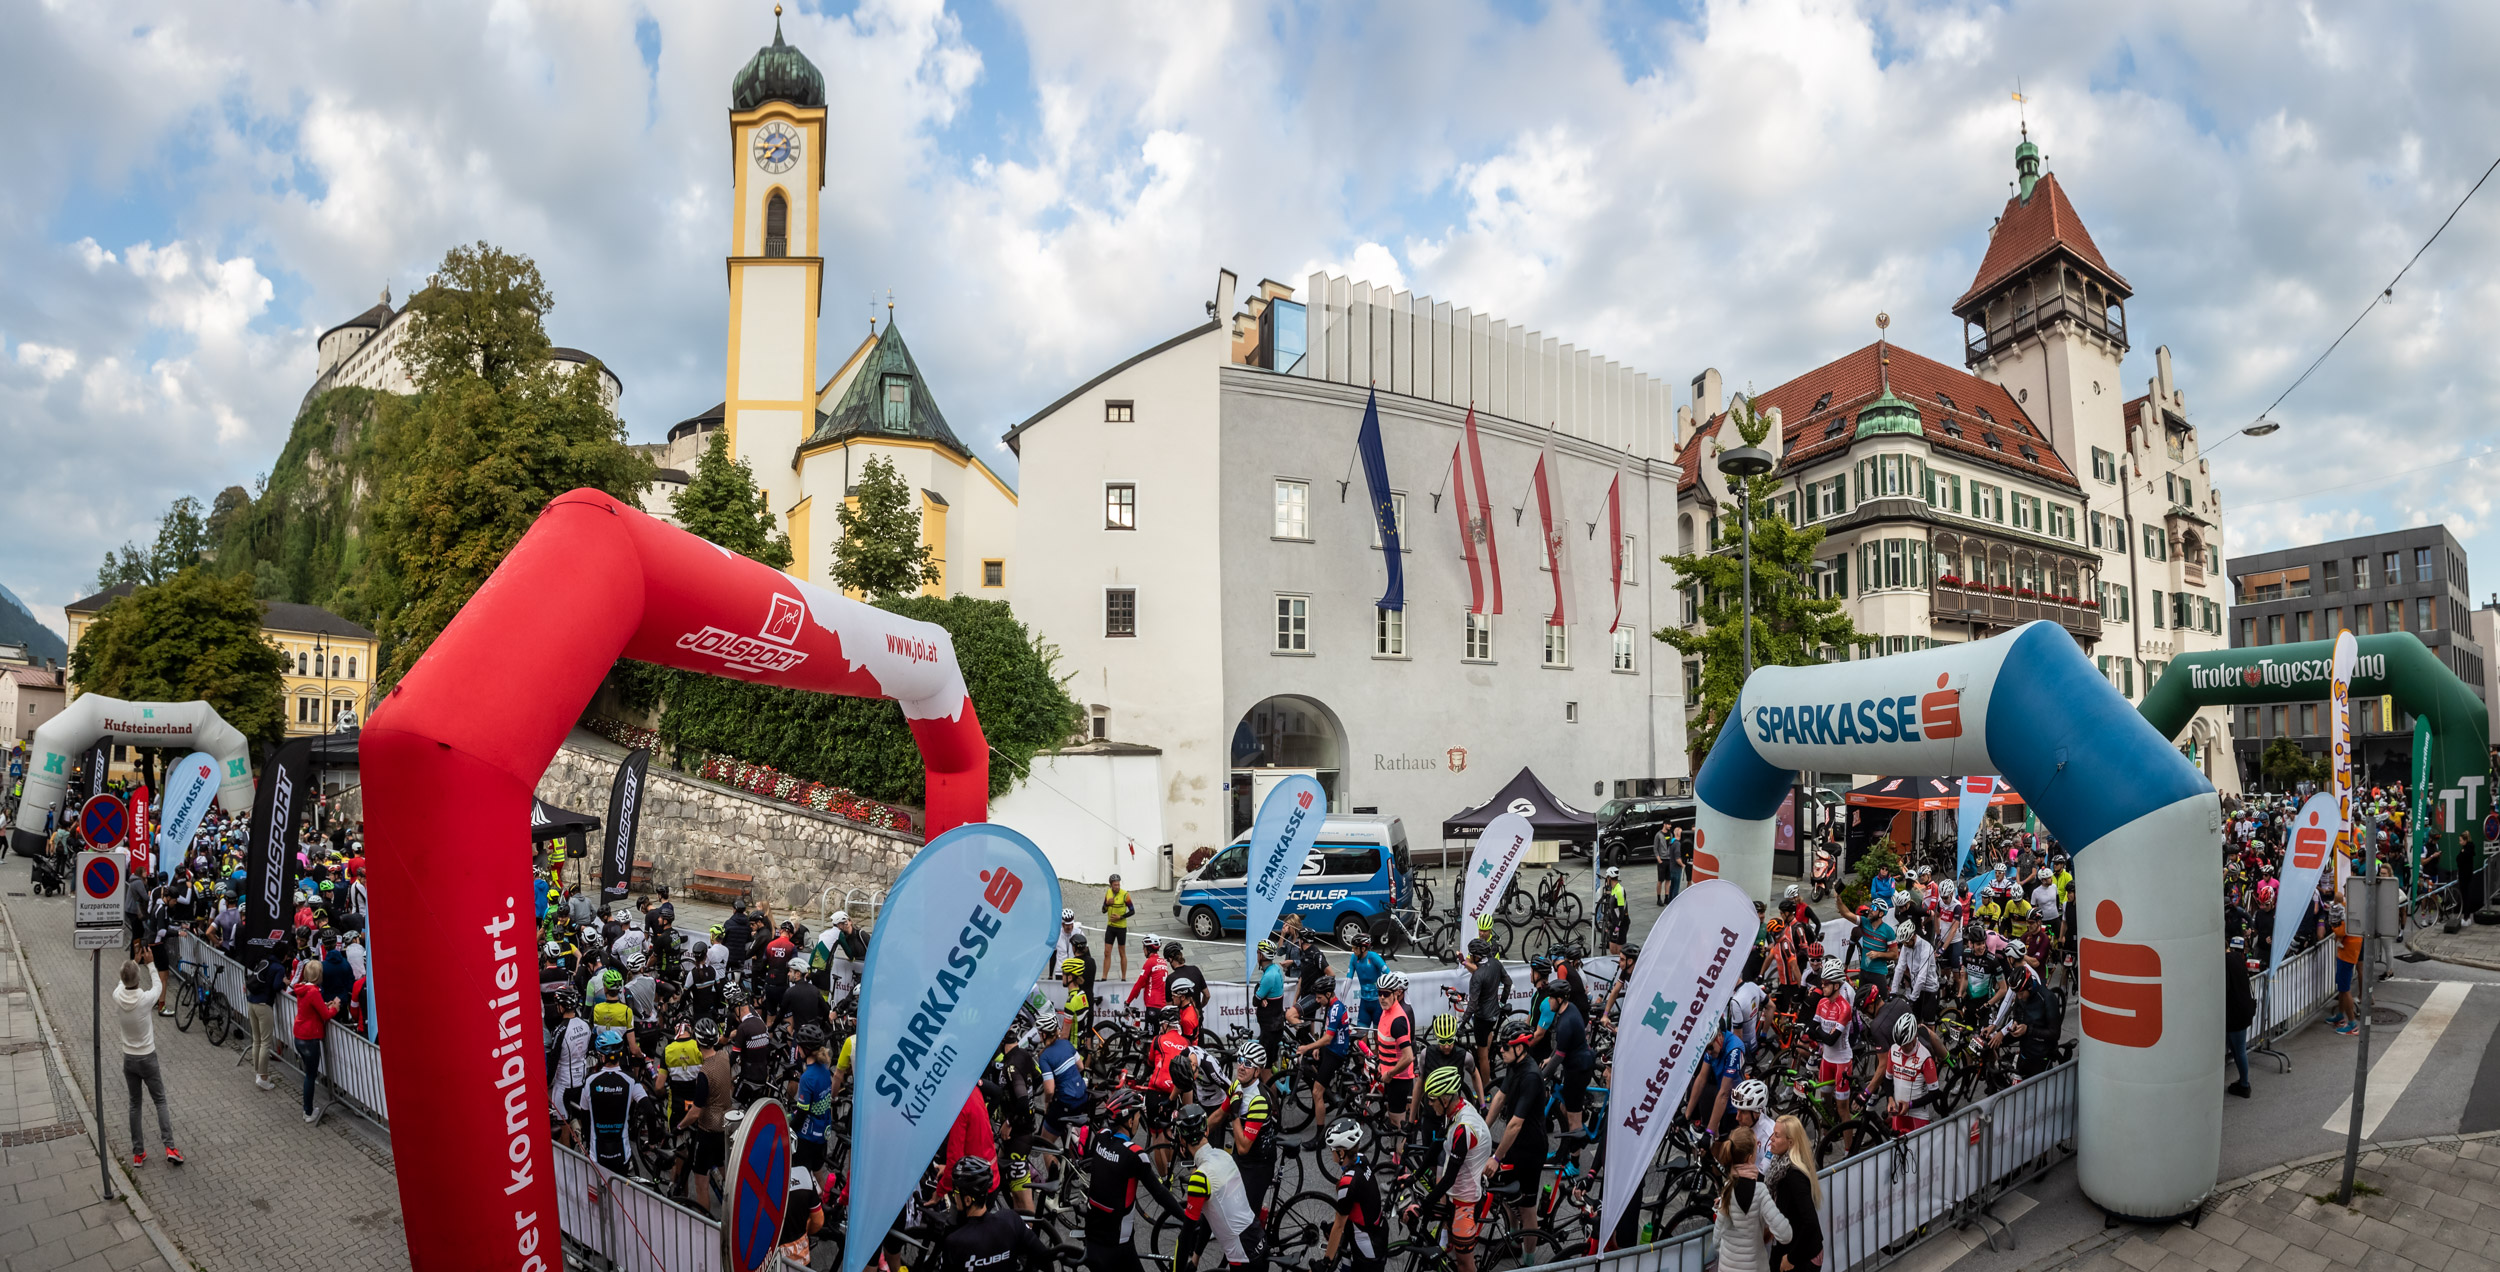 Bildbericht Kufsteinerland Radmarathon